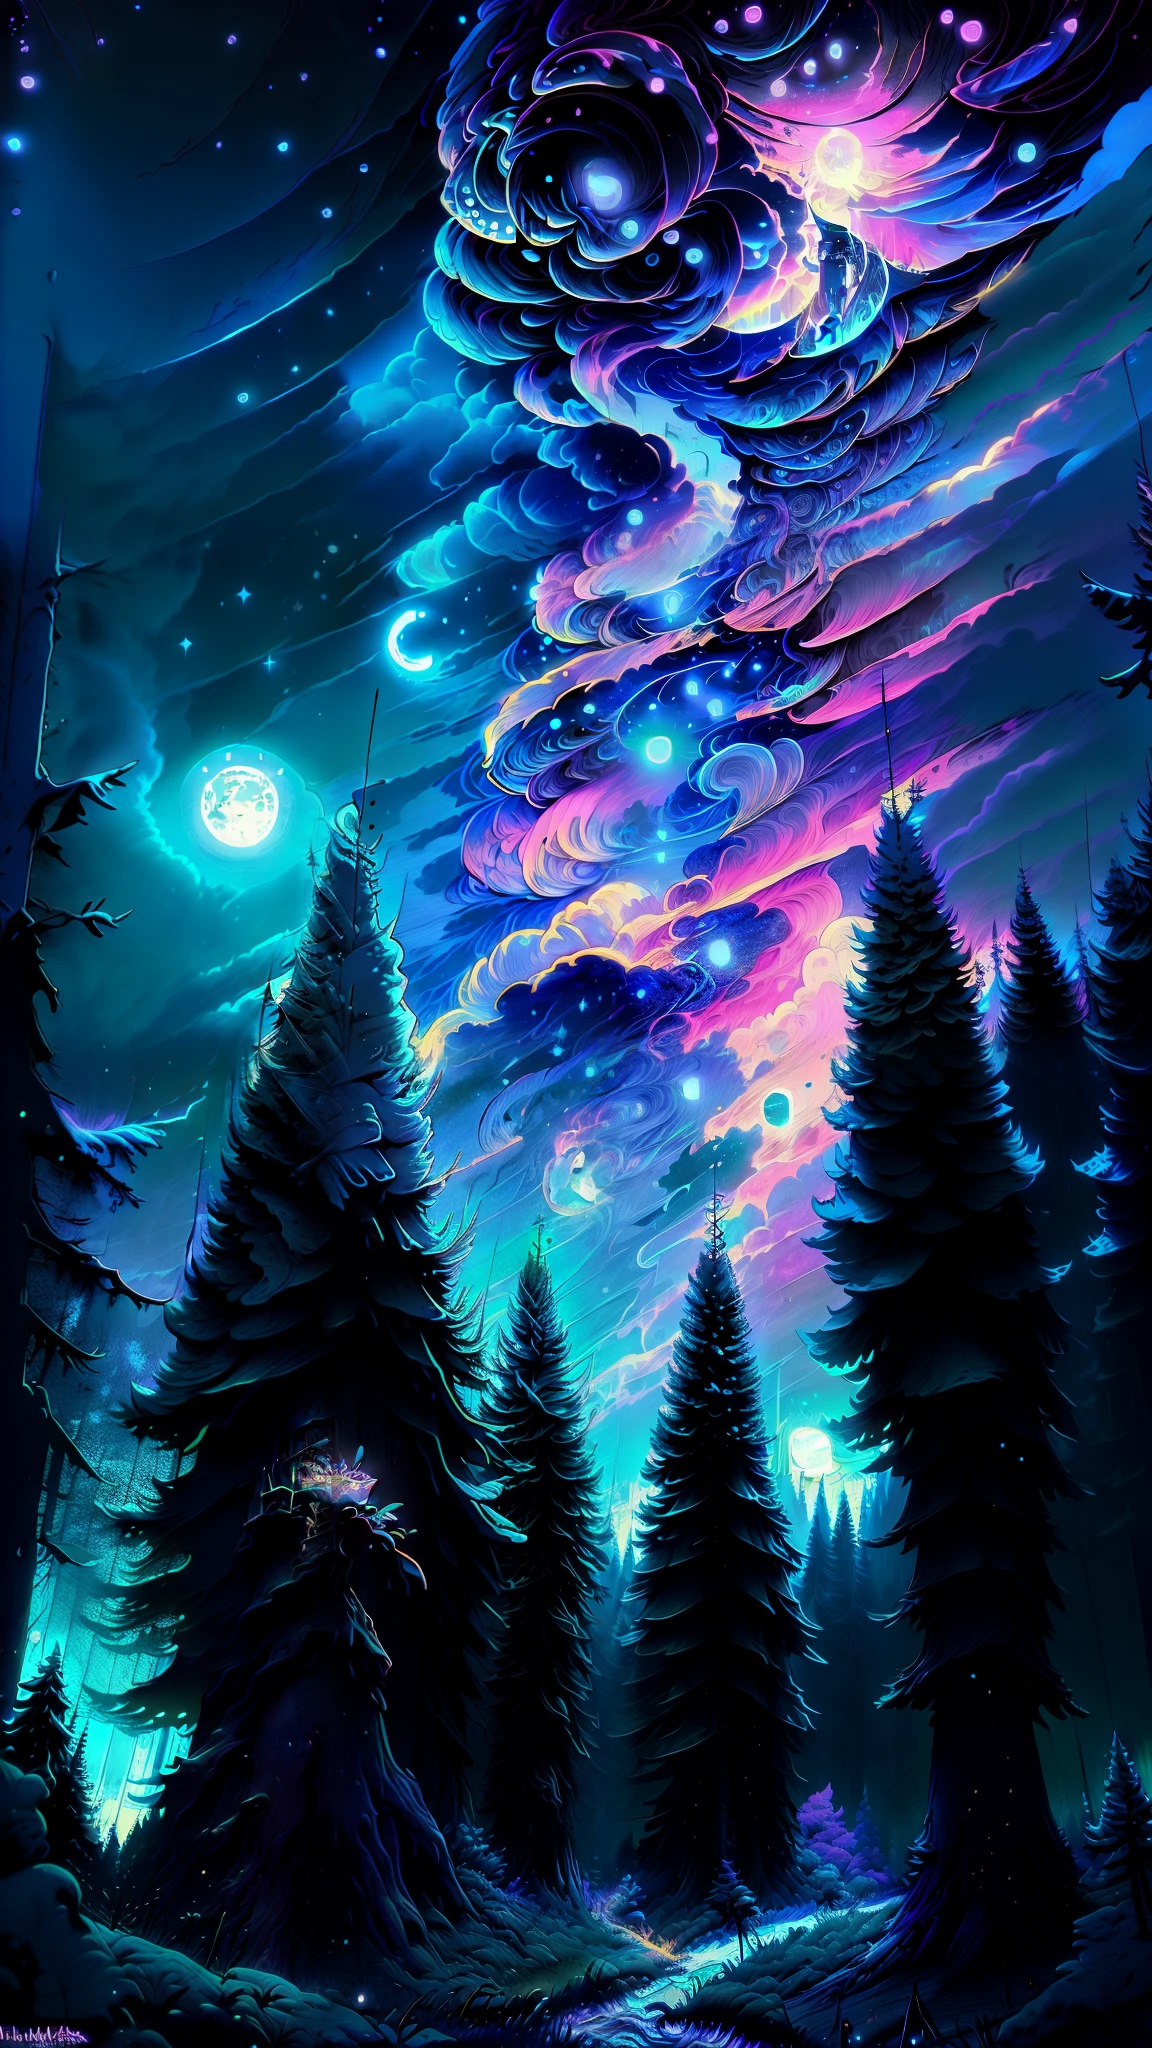 Vista de uma floresta com lua cheia e estrelas no céu, 🌲🌌, Floresta e Lua, floresta noturna, Noite na floresta, Floresta iluminada pela lua, floresta à noite, Noite de Sonho, paisagem natural noturna, Noite de luar atmosfera sonhadora, Noite Mística, cena noturna tranquila da floresta, cenário de floresta mágica, fundo de árvores e estrelas